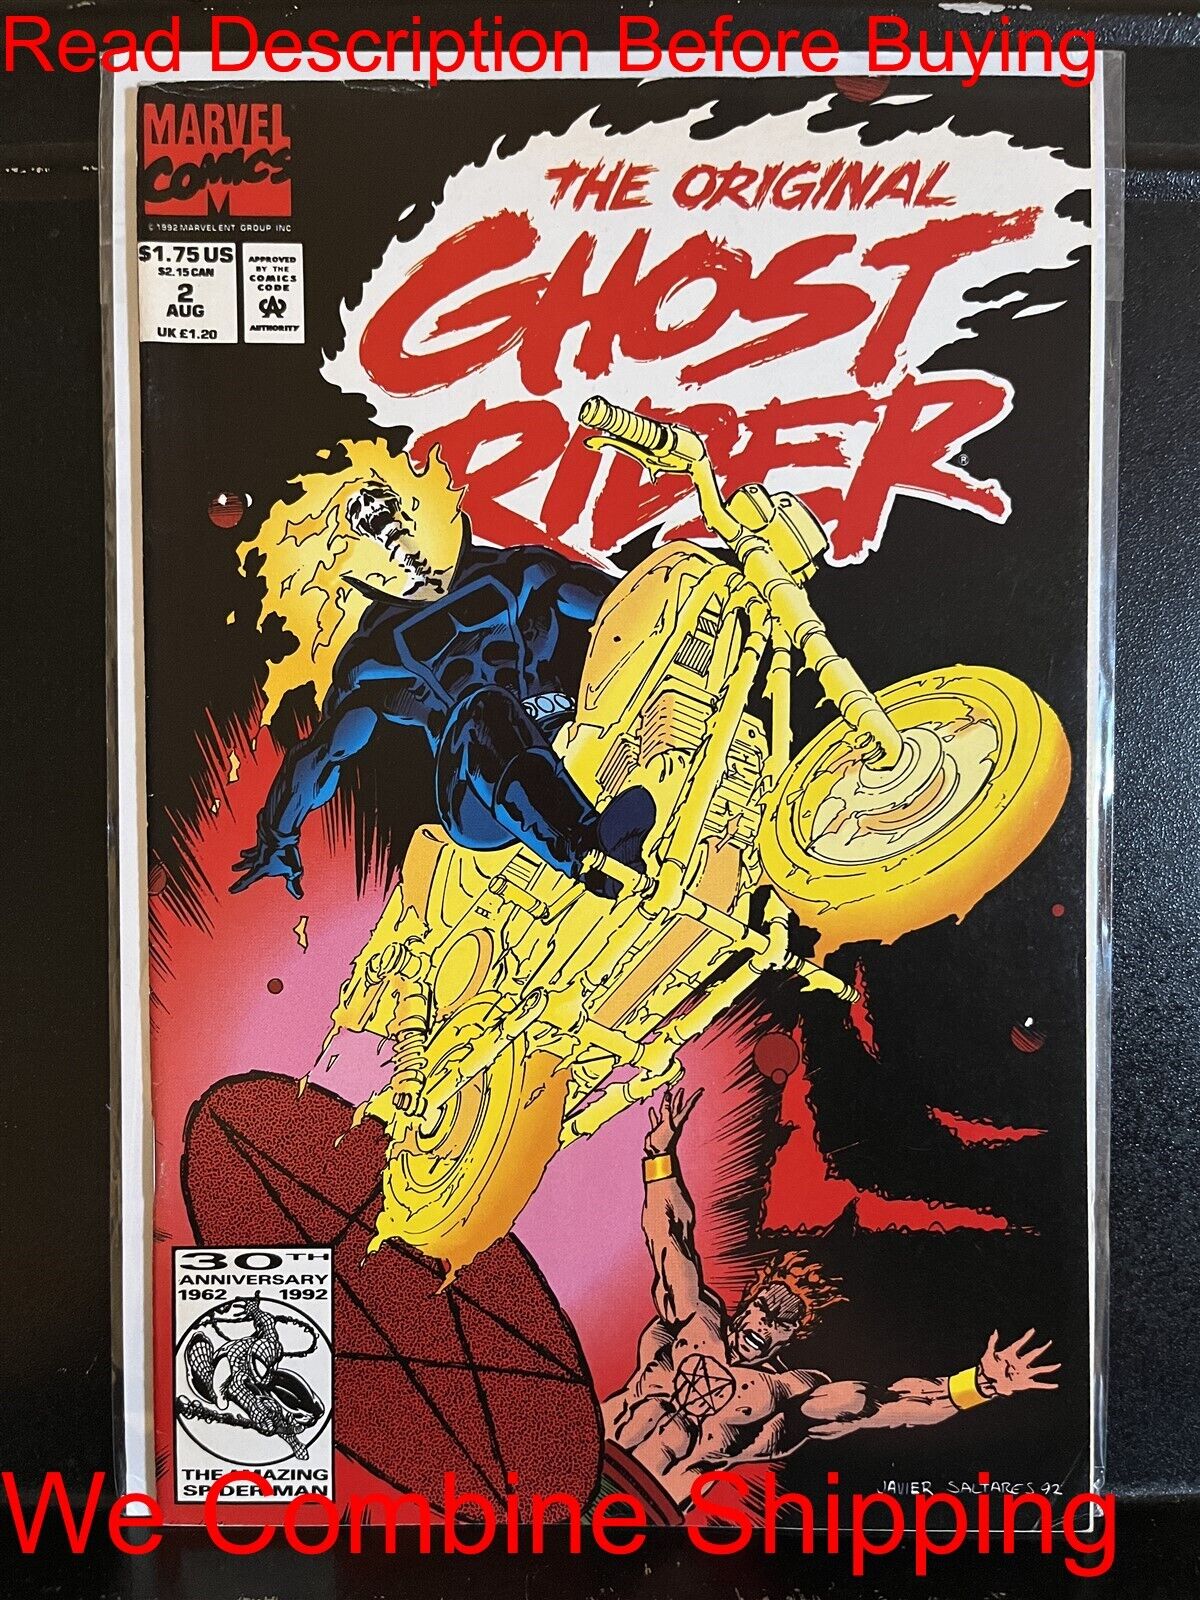 BARGAIN BOOKS ($5 MIN PURCHASE) Original Ghost Rider #2 (1992) Free Combine Ship